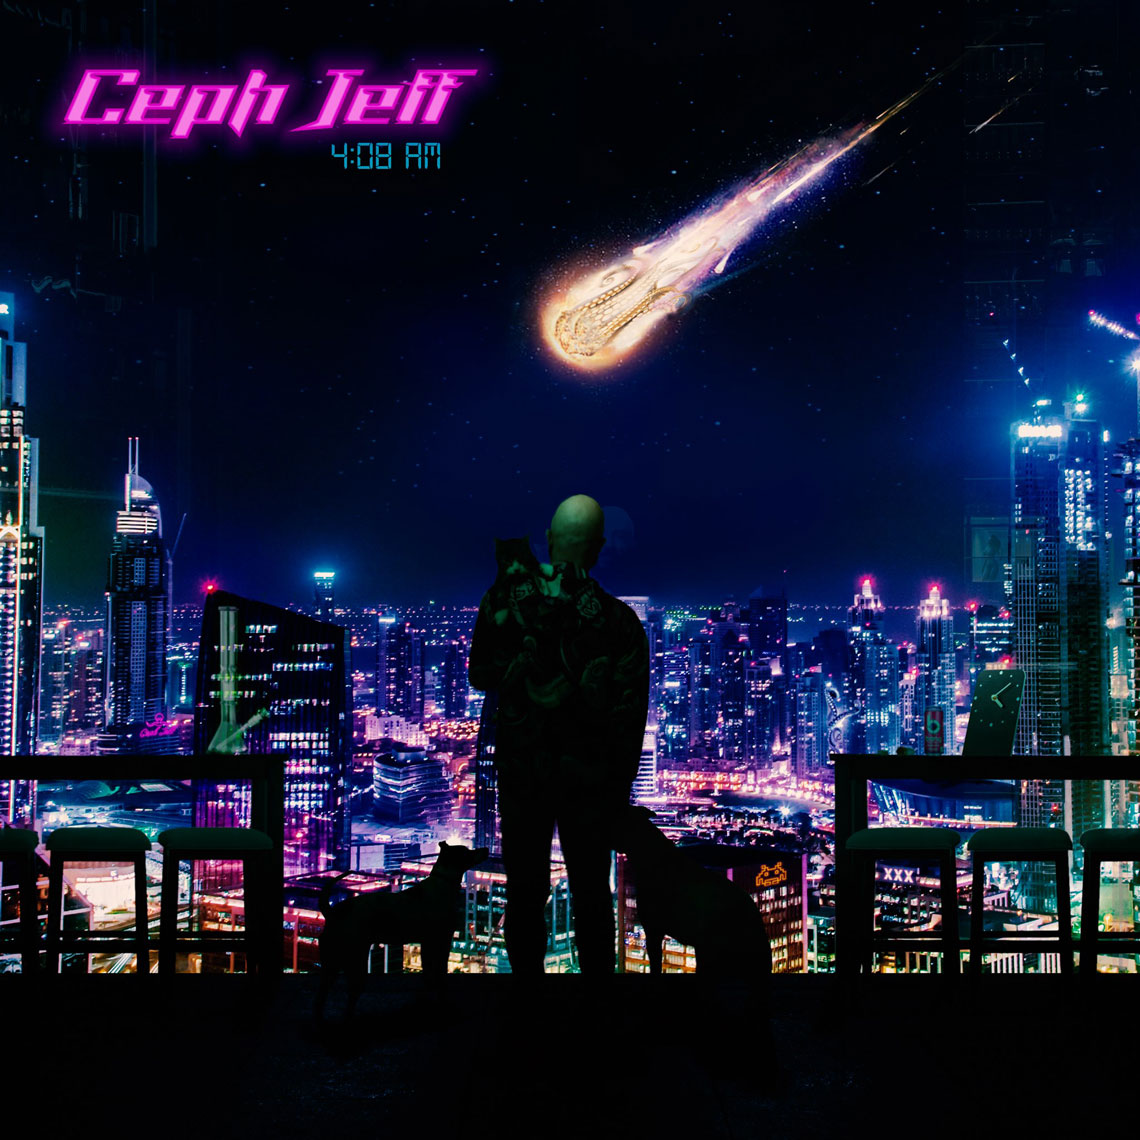 Ceph Jeff - 4:08 AM Album Cover Design